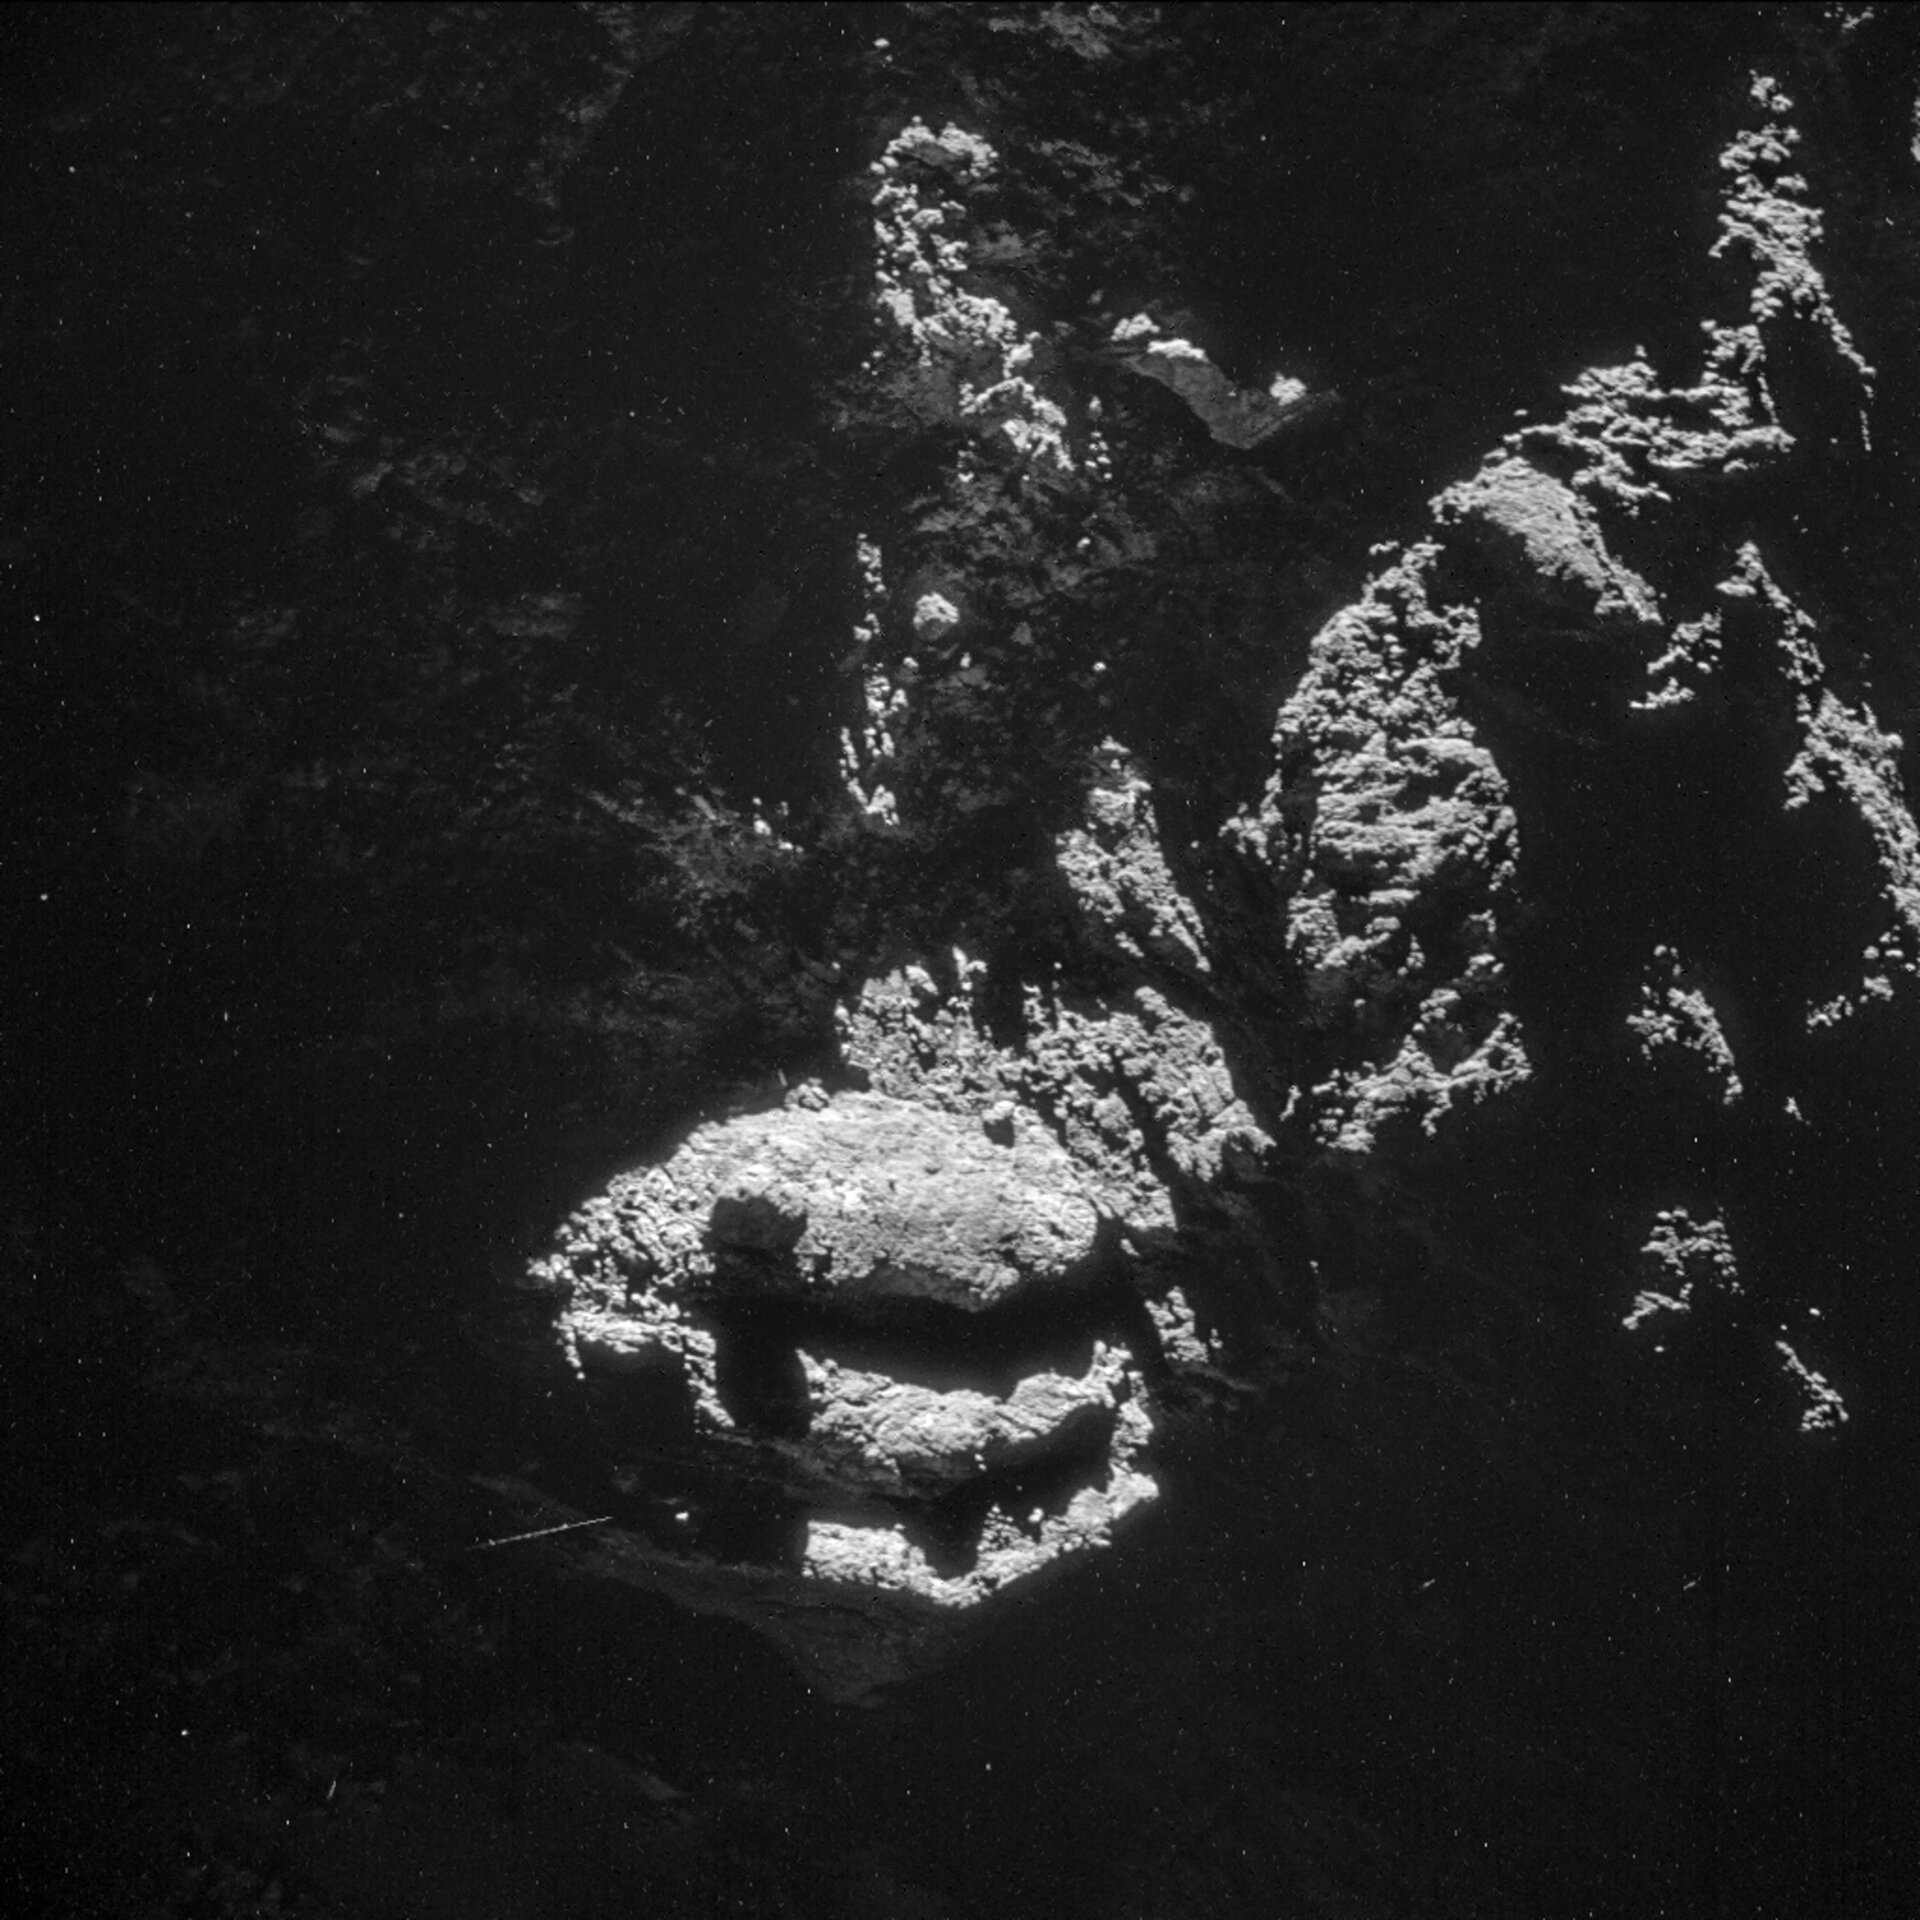 Comet on 24 October 2014 – NavCam 